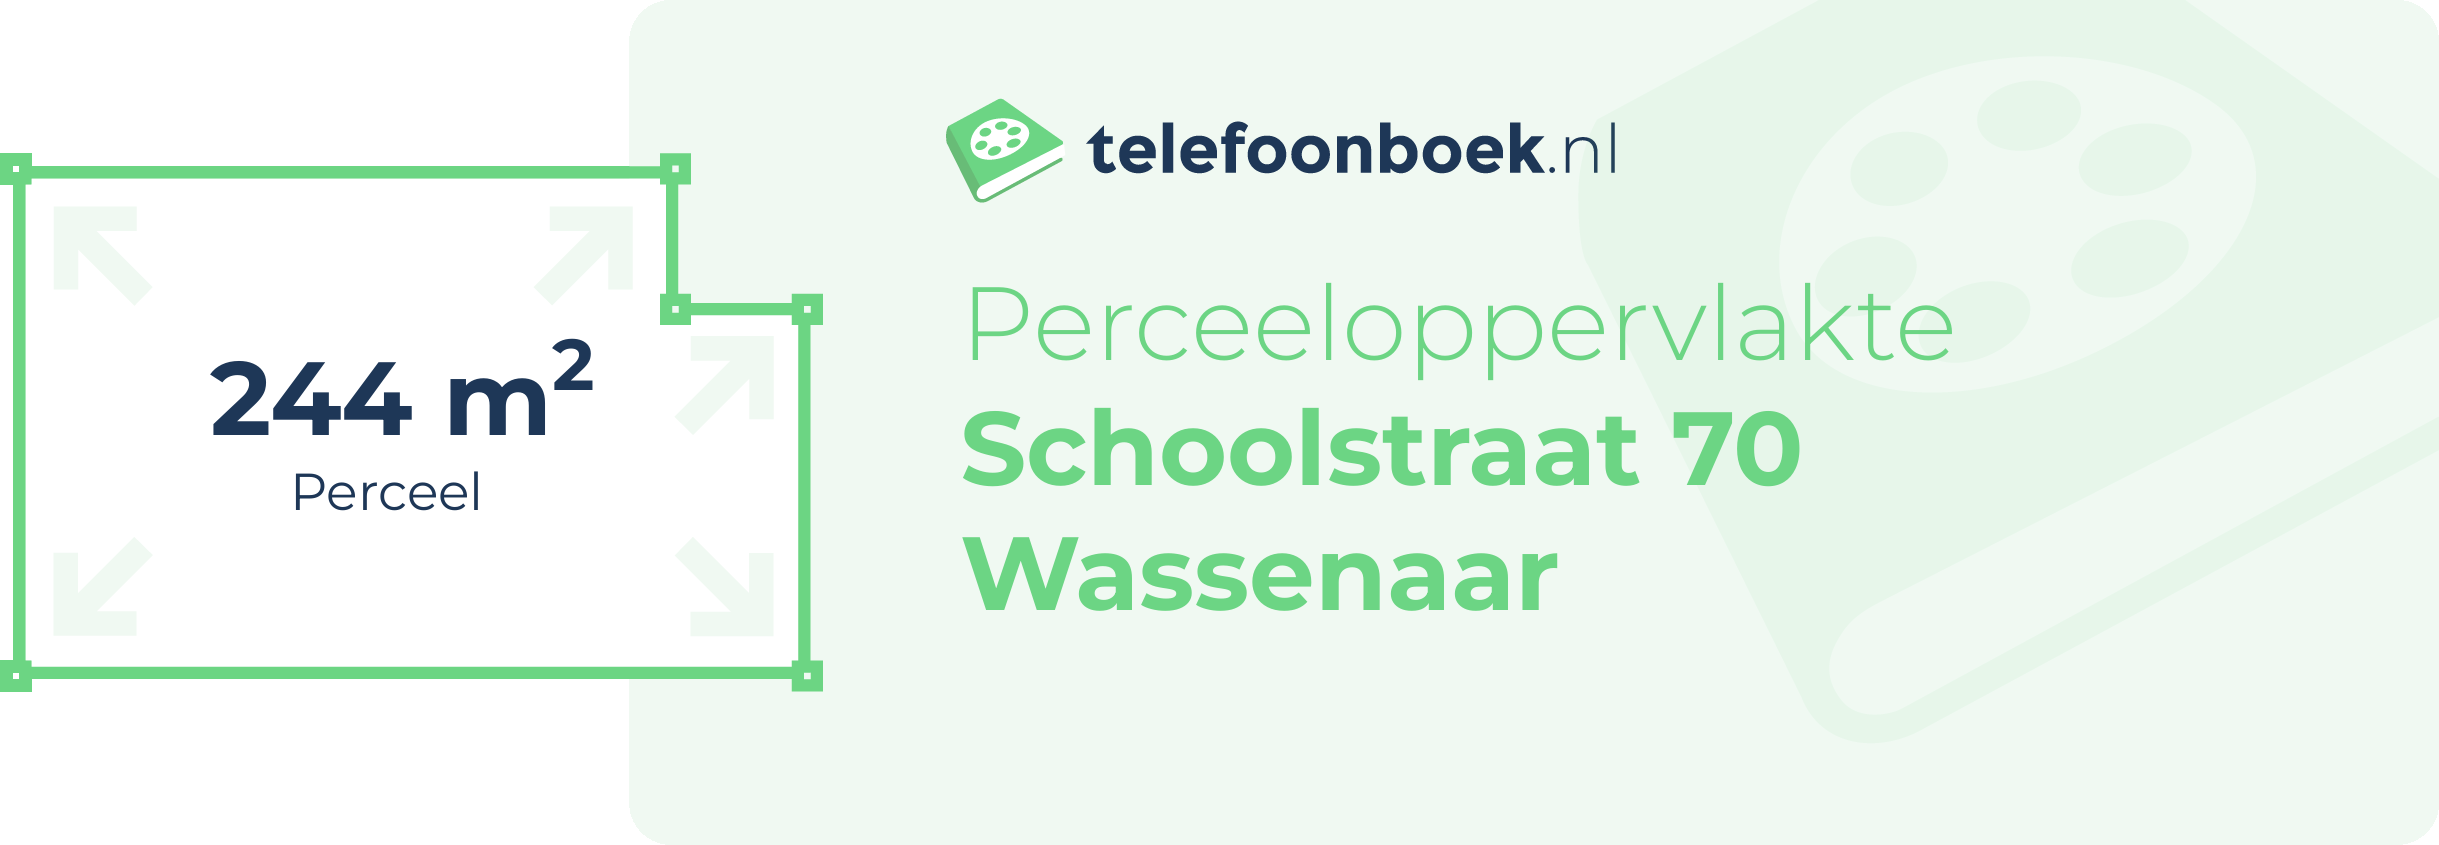 Perceeloppervlakte Schoolstraat 70 Wassenaar